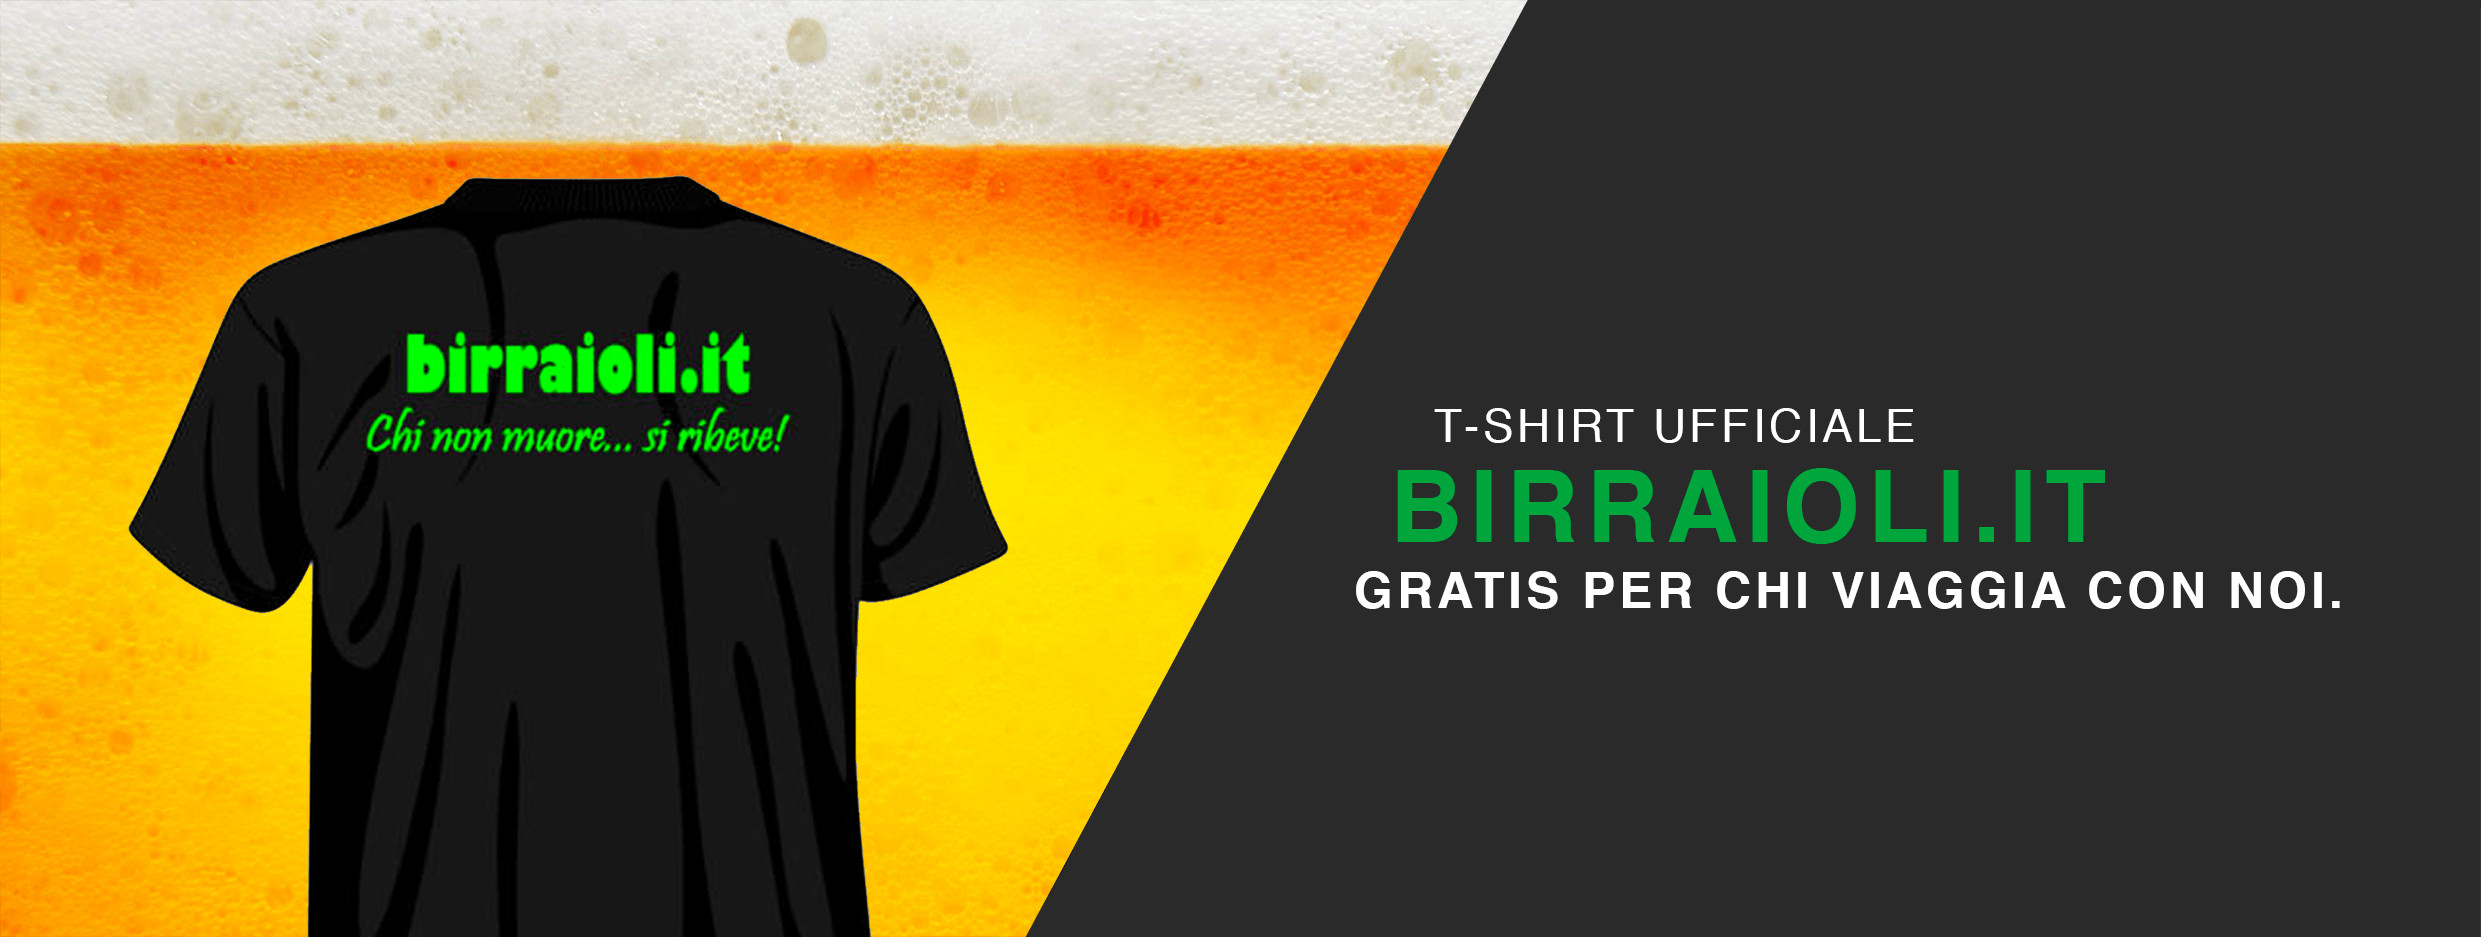 Birraioli.it - T-shirt gratuita